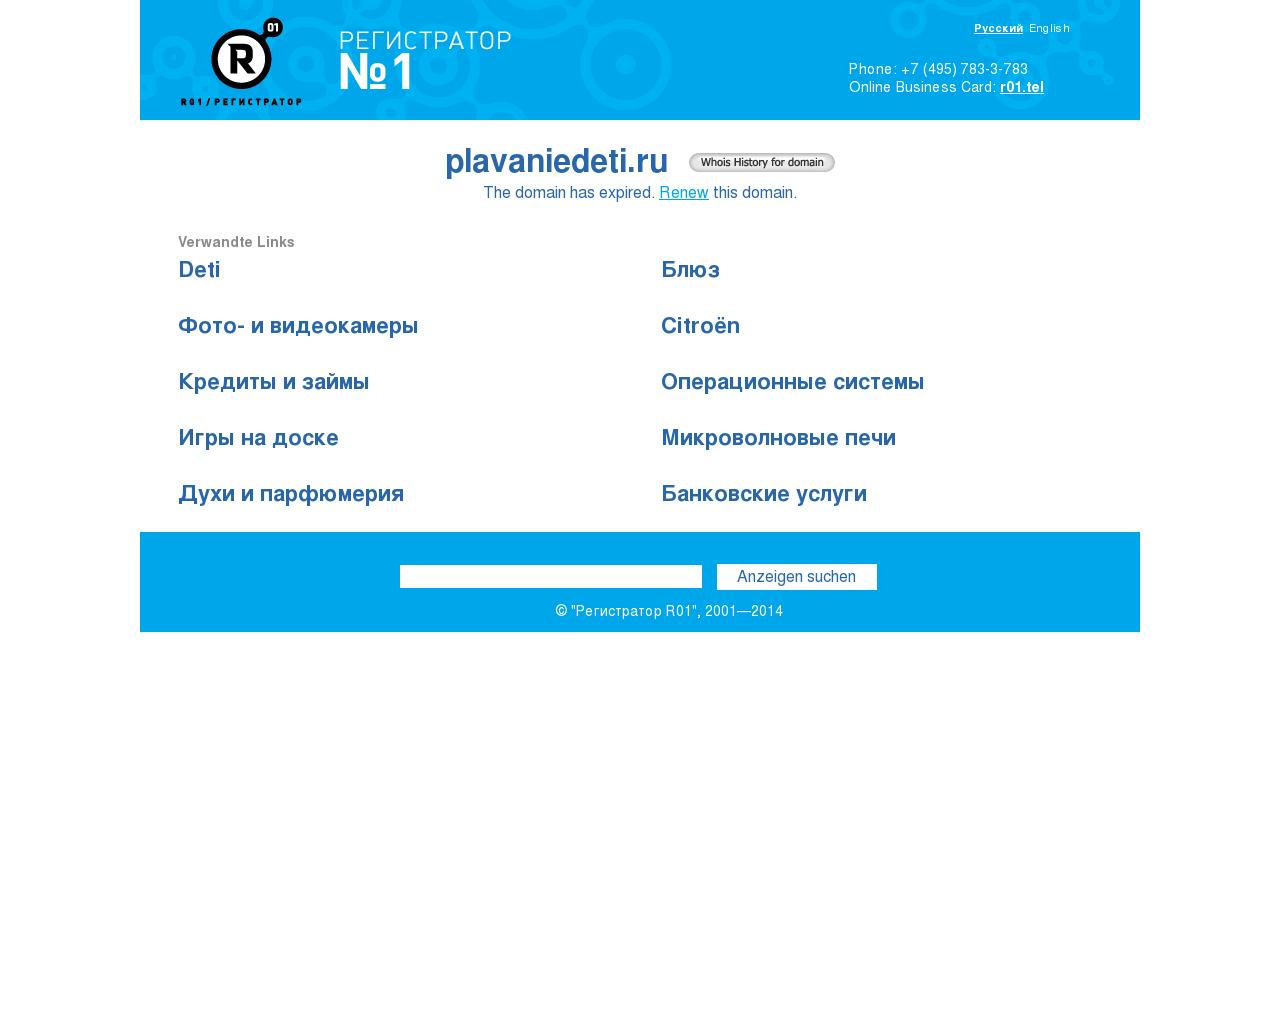 Изображение сайта plavaniedeti.ru в разрешении 1280x1024